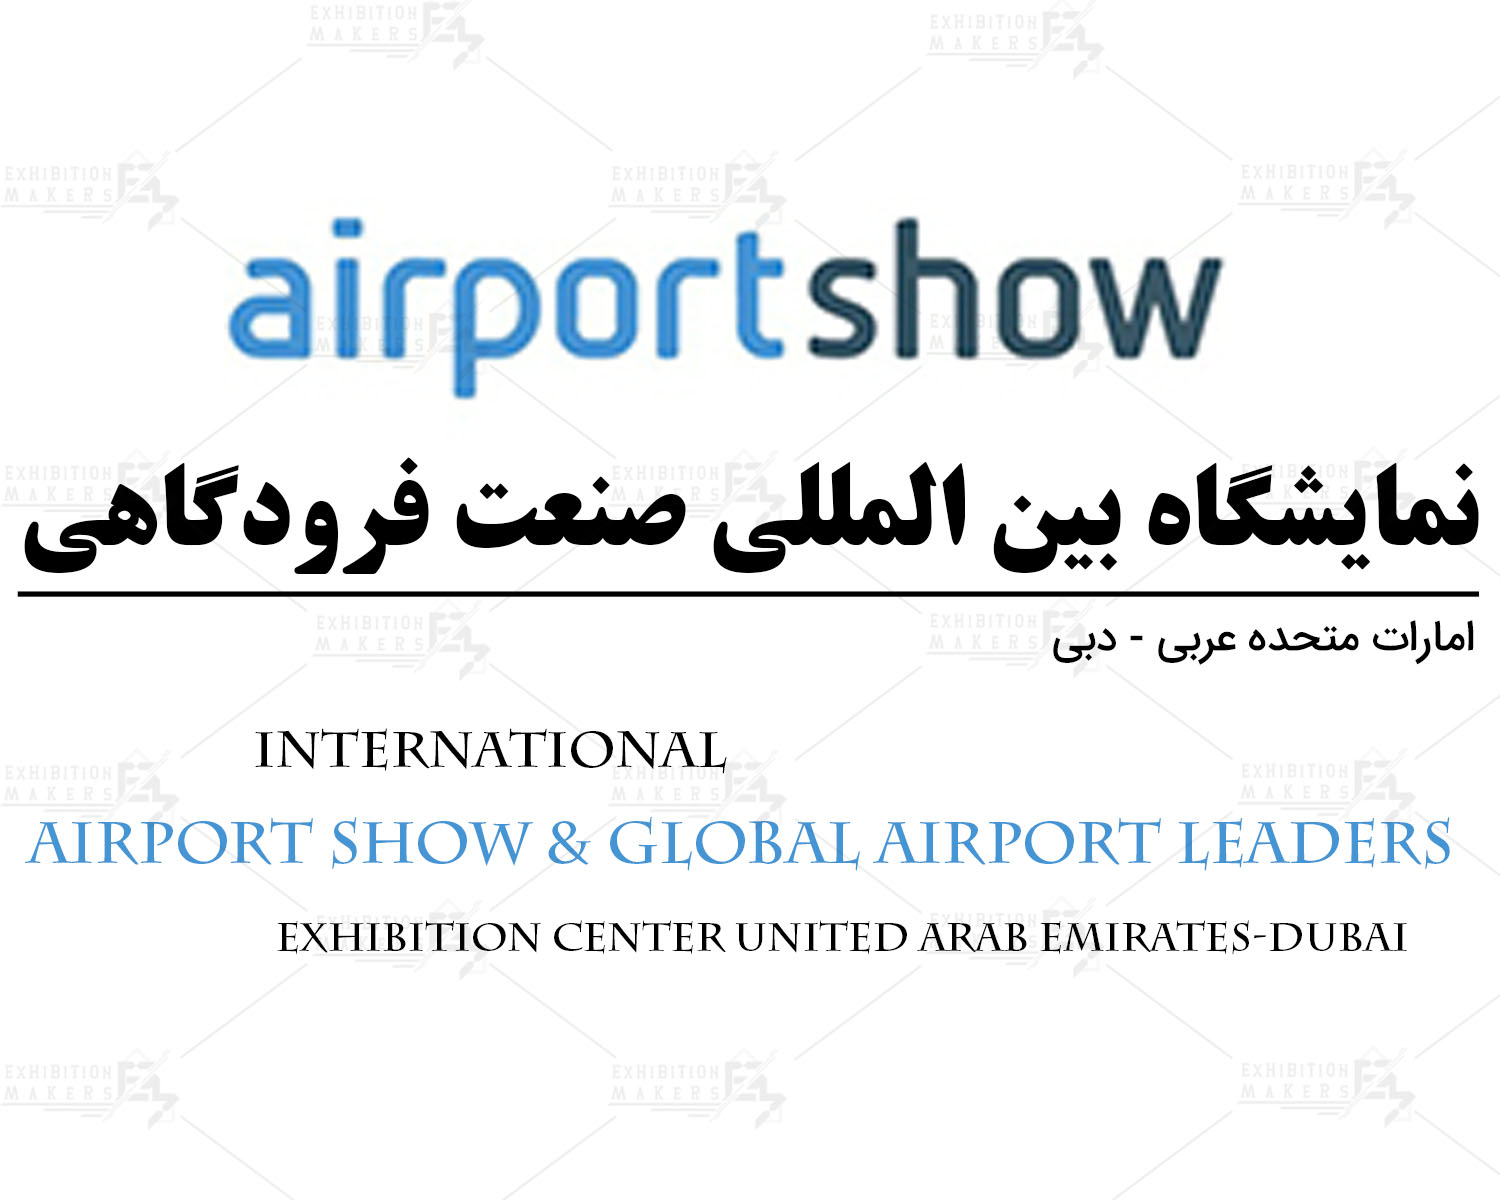 نمایشگاه بین المللی صنعت فرودگاهی امارات متحده عربی- دبی